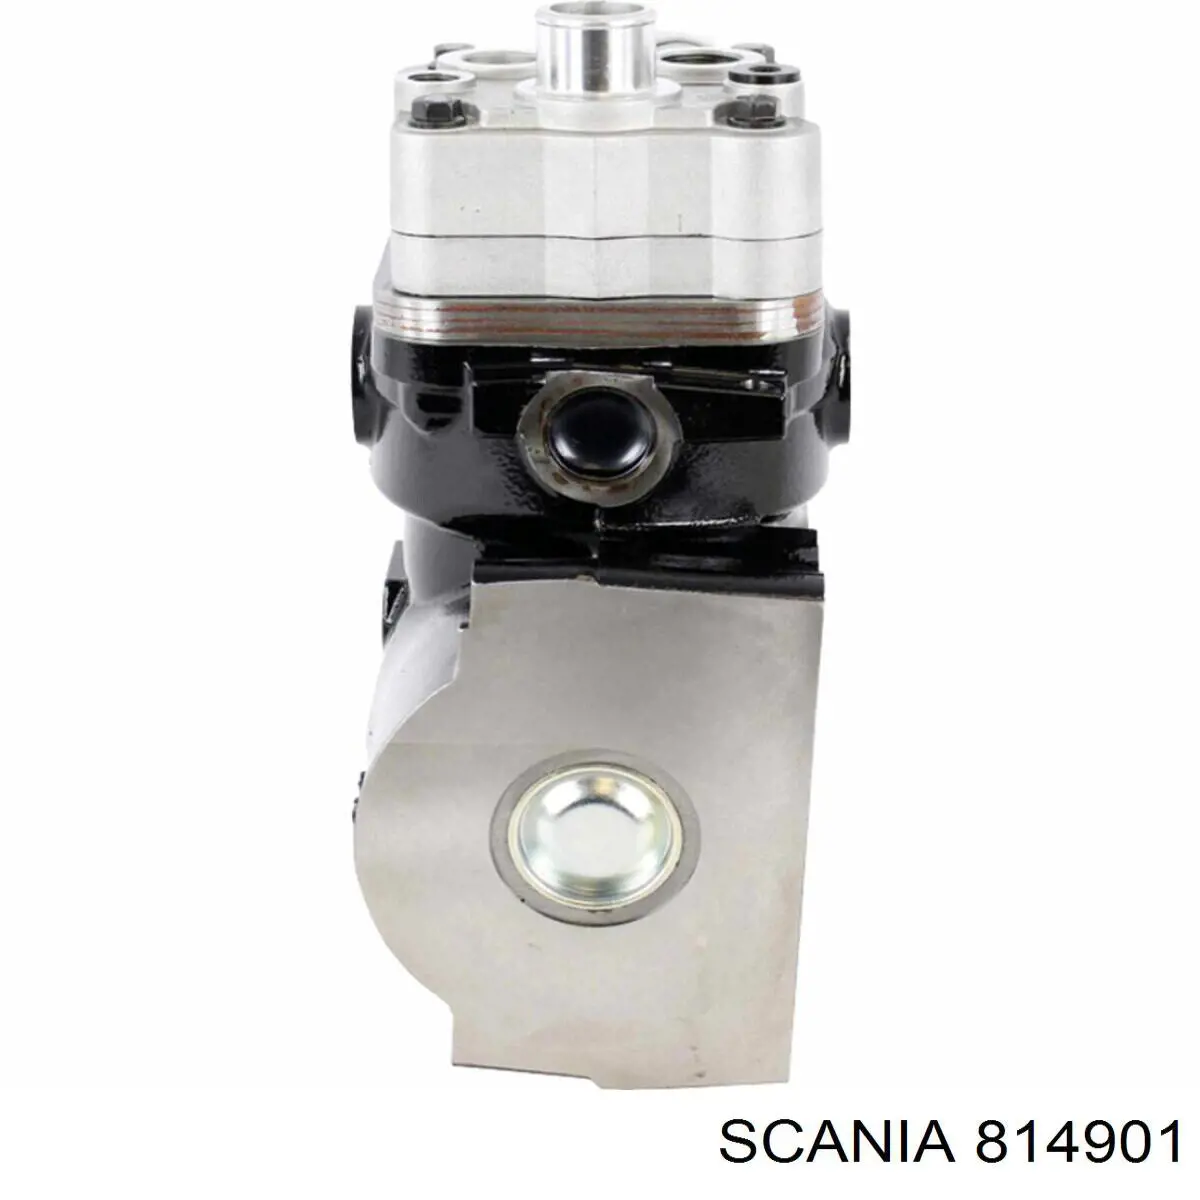 814901 Scania anillo reten caja de transmision (salida eje secundario)